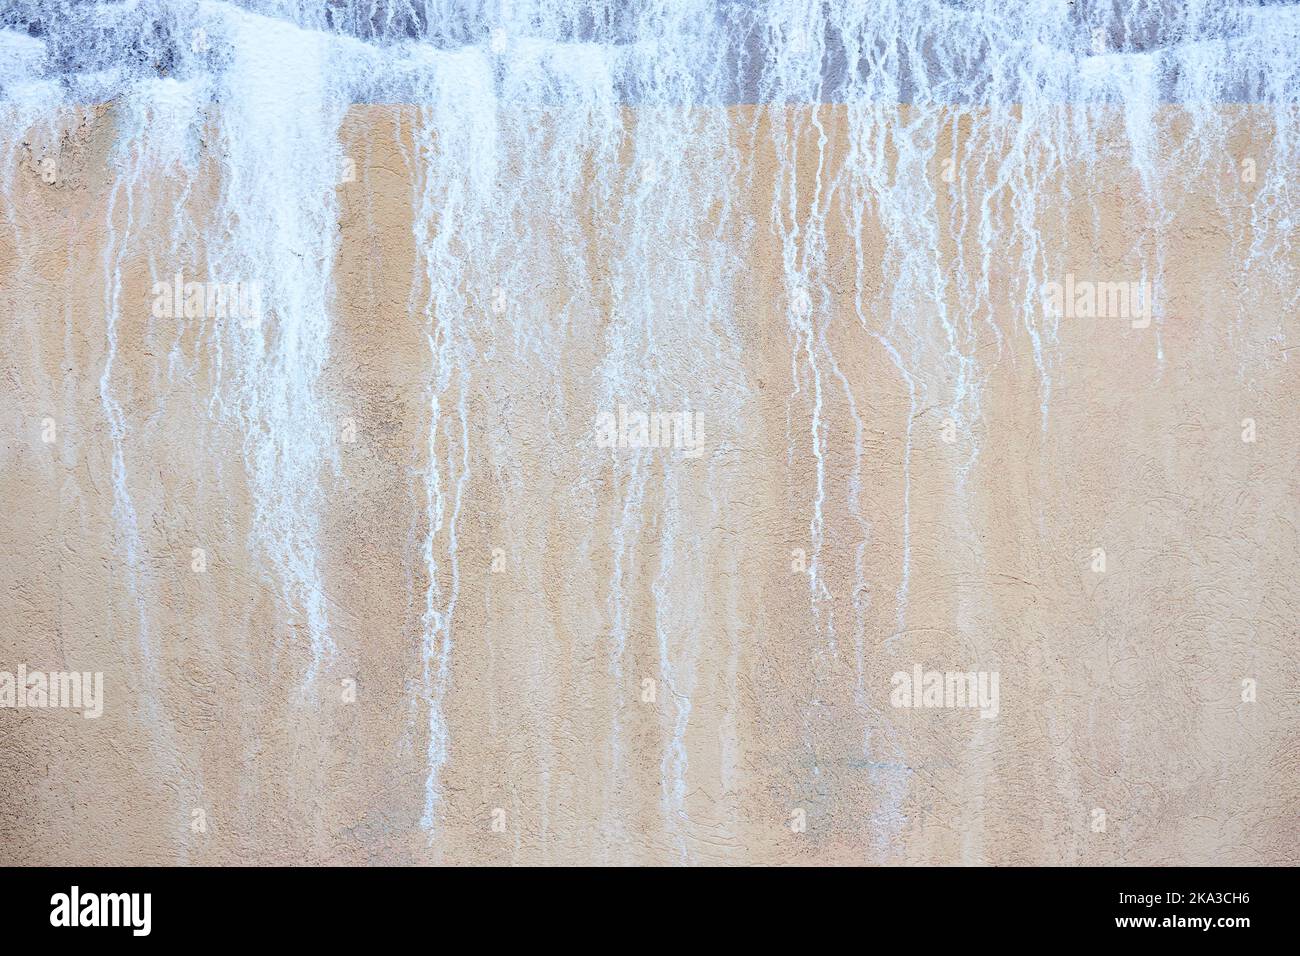 Alte Betonwand stuckblau und beige sandig mit salzenden Tropfen Flecken wie Wasserfall. Stockfoto